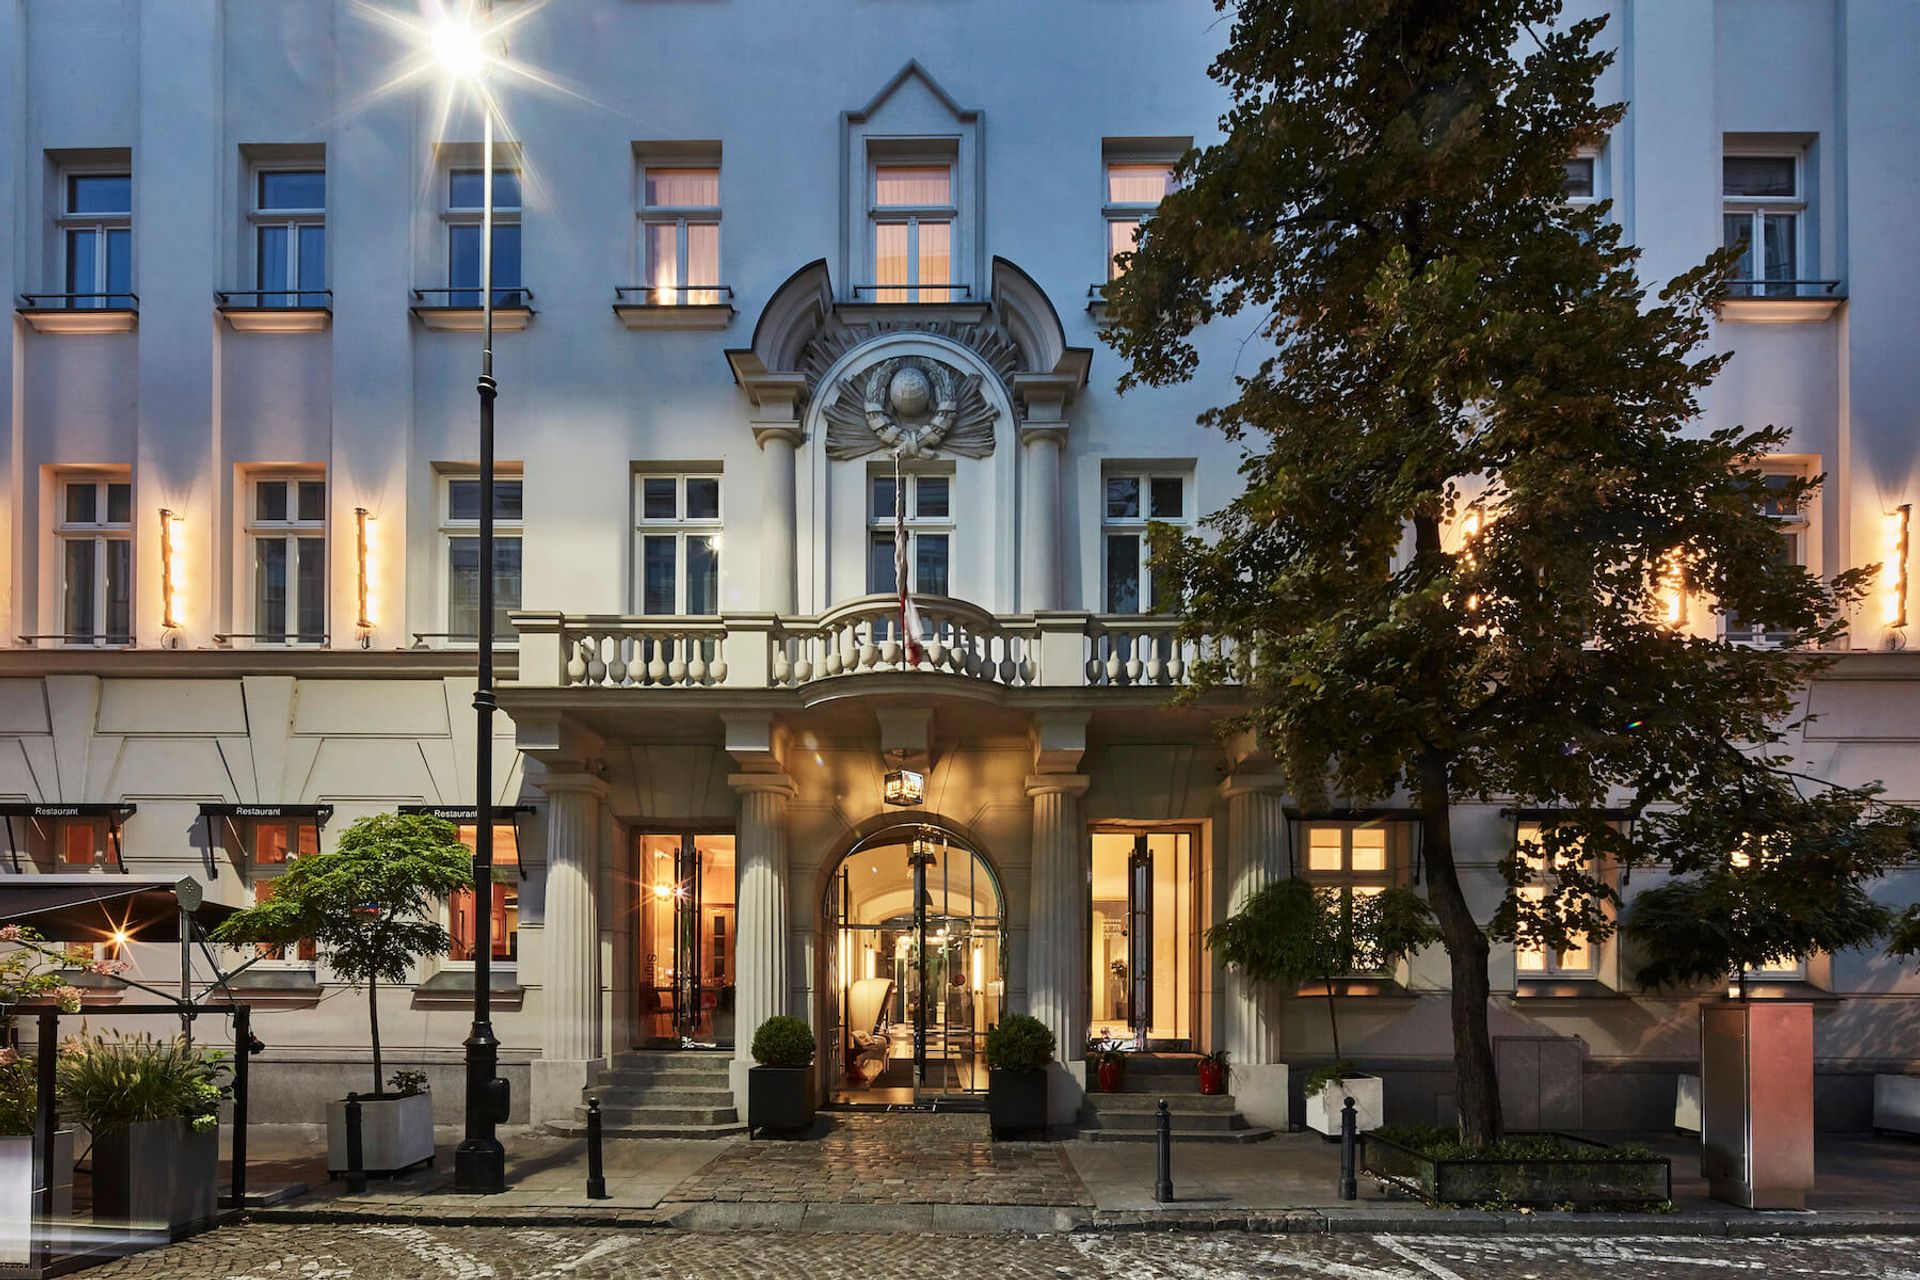  Pięciogwiazdkowy H15 Boutique Hotel w Warszawie dołączył do sieci Design Hotels, należącej do Marriott International